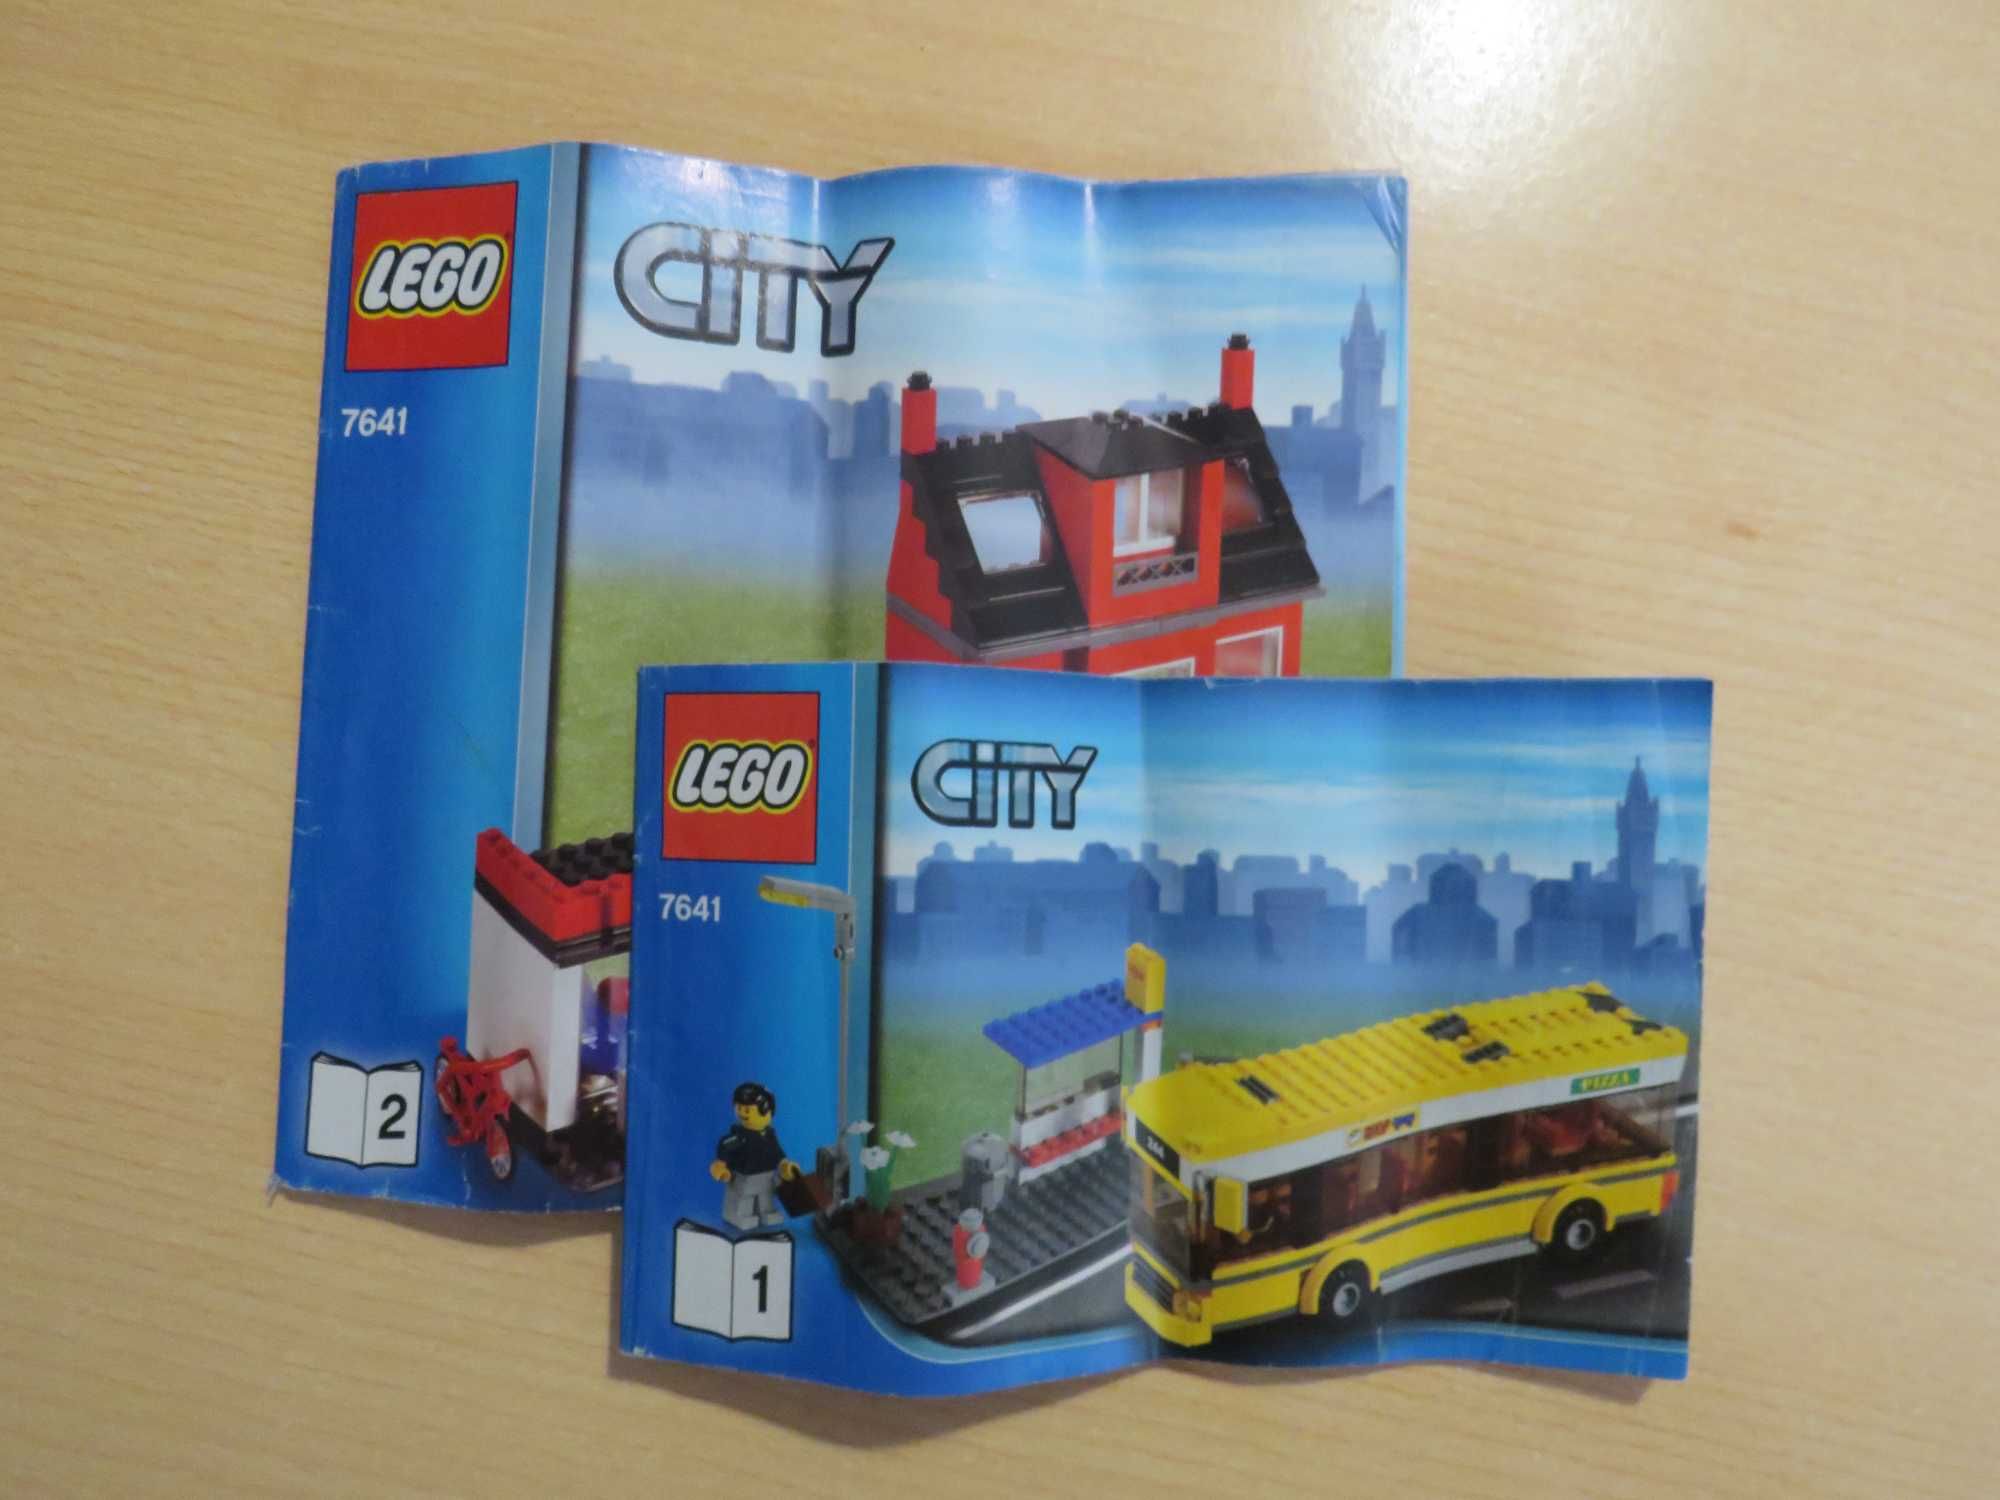 Vendo Lego City 7641 City Corner